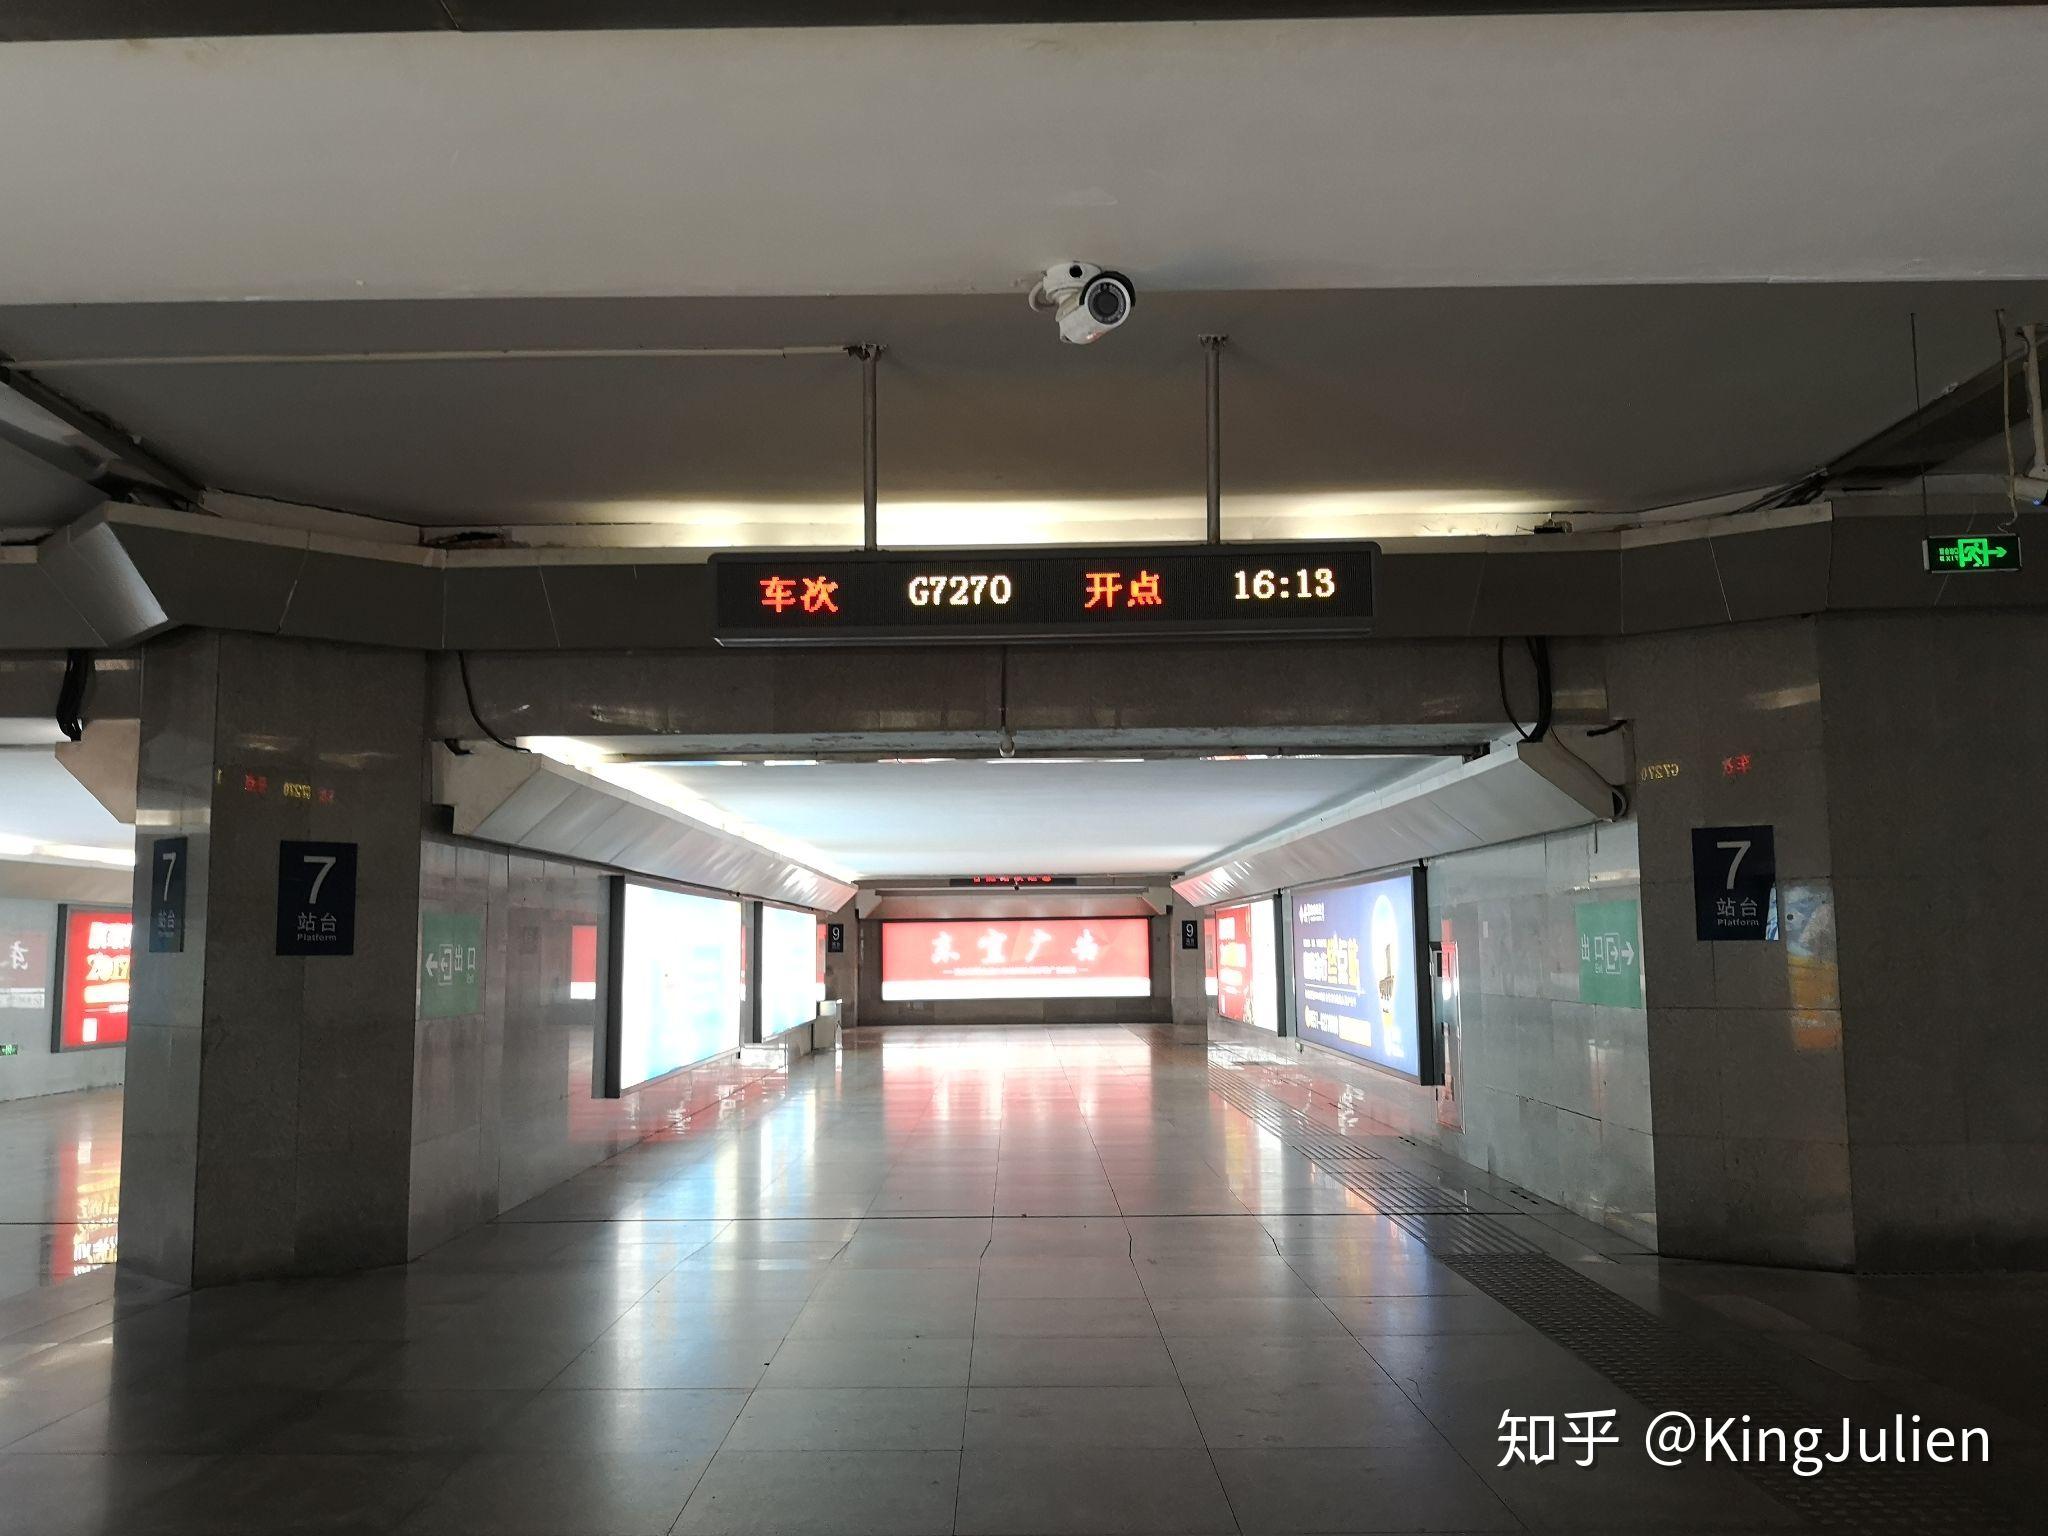 地下通道平台站台指示牌系列(按照车站名称拼音排序):宜昌东站:徐州站